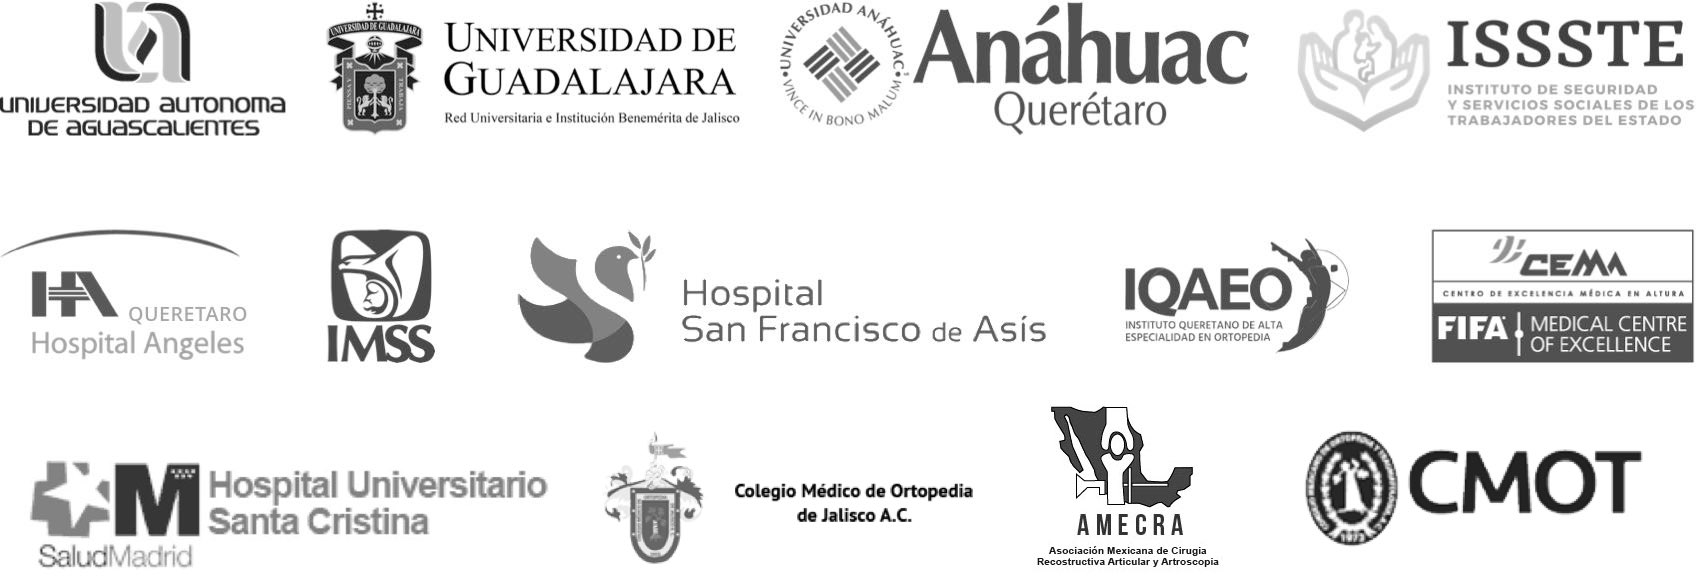 Logos de instituciones y hospitales